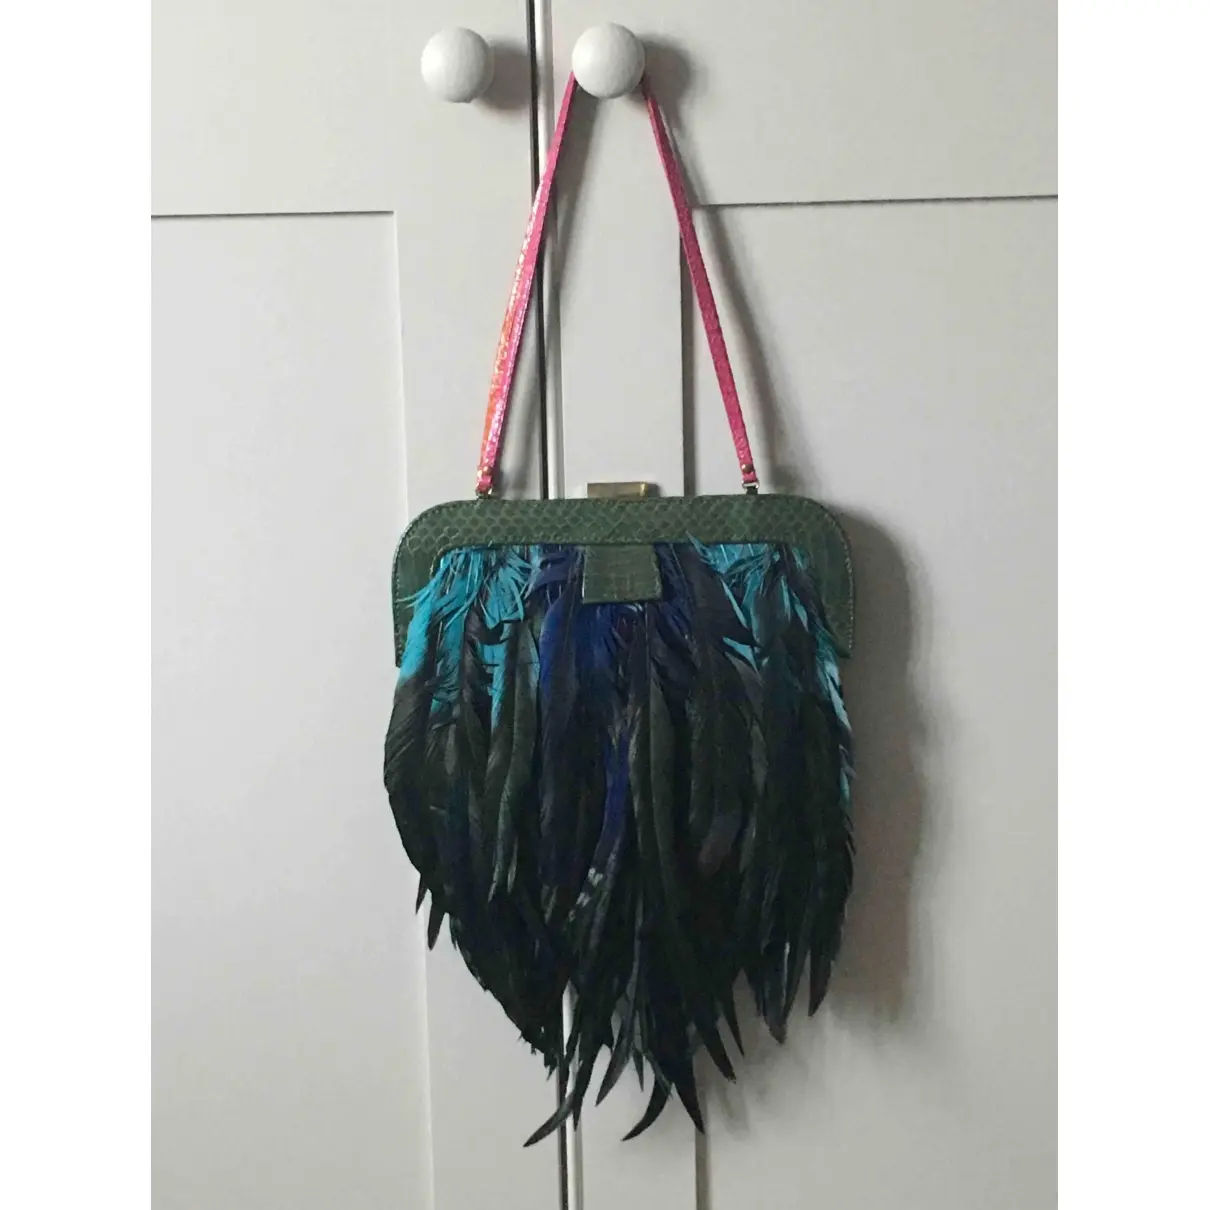 Angel Jackson Handbag for sale